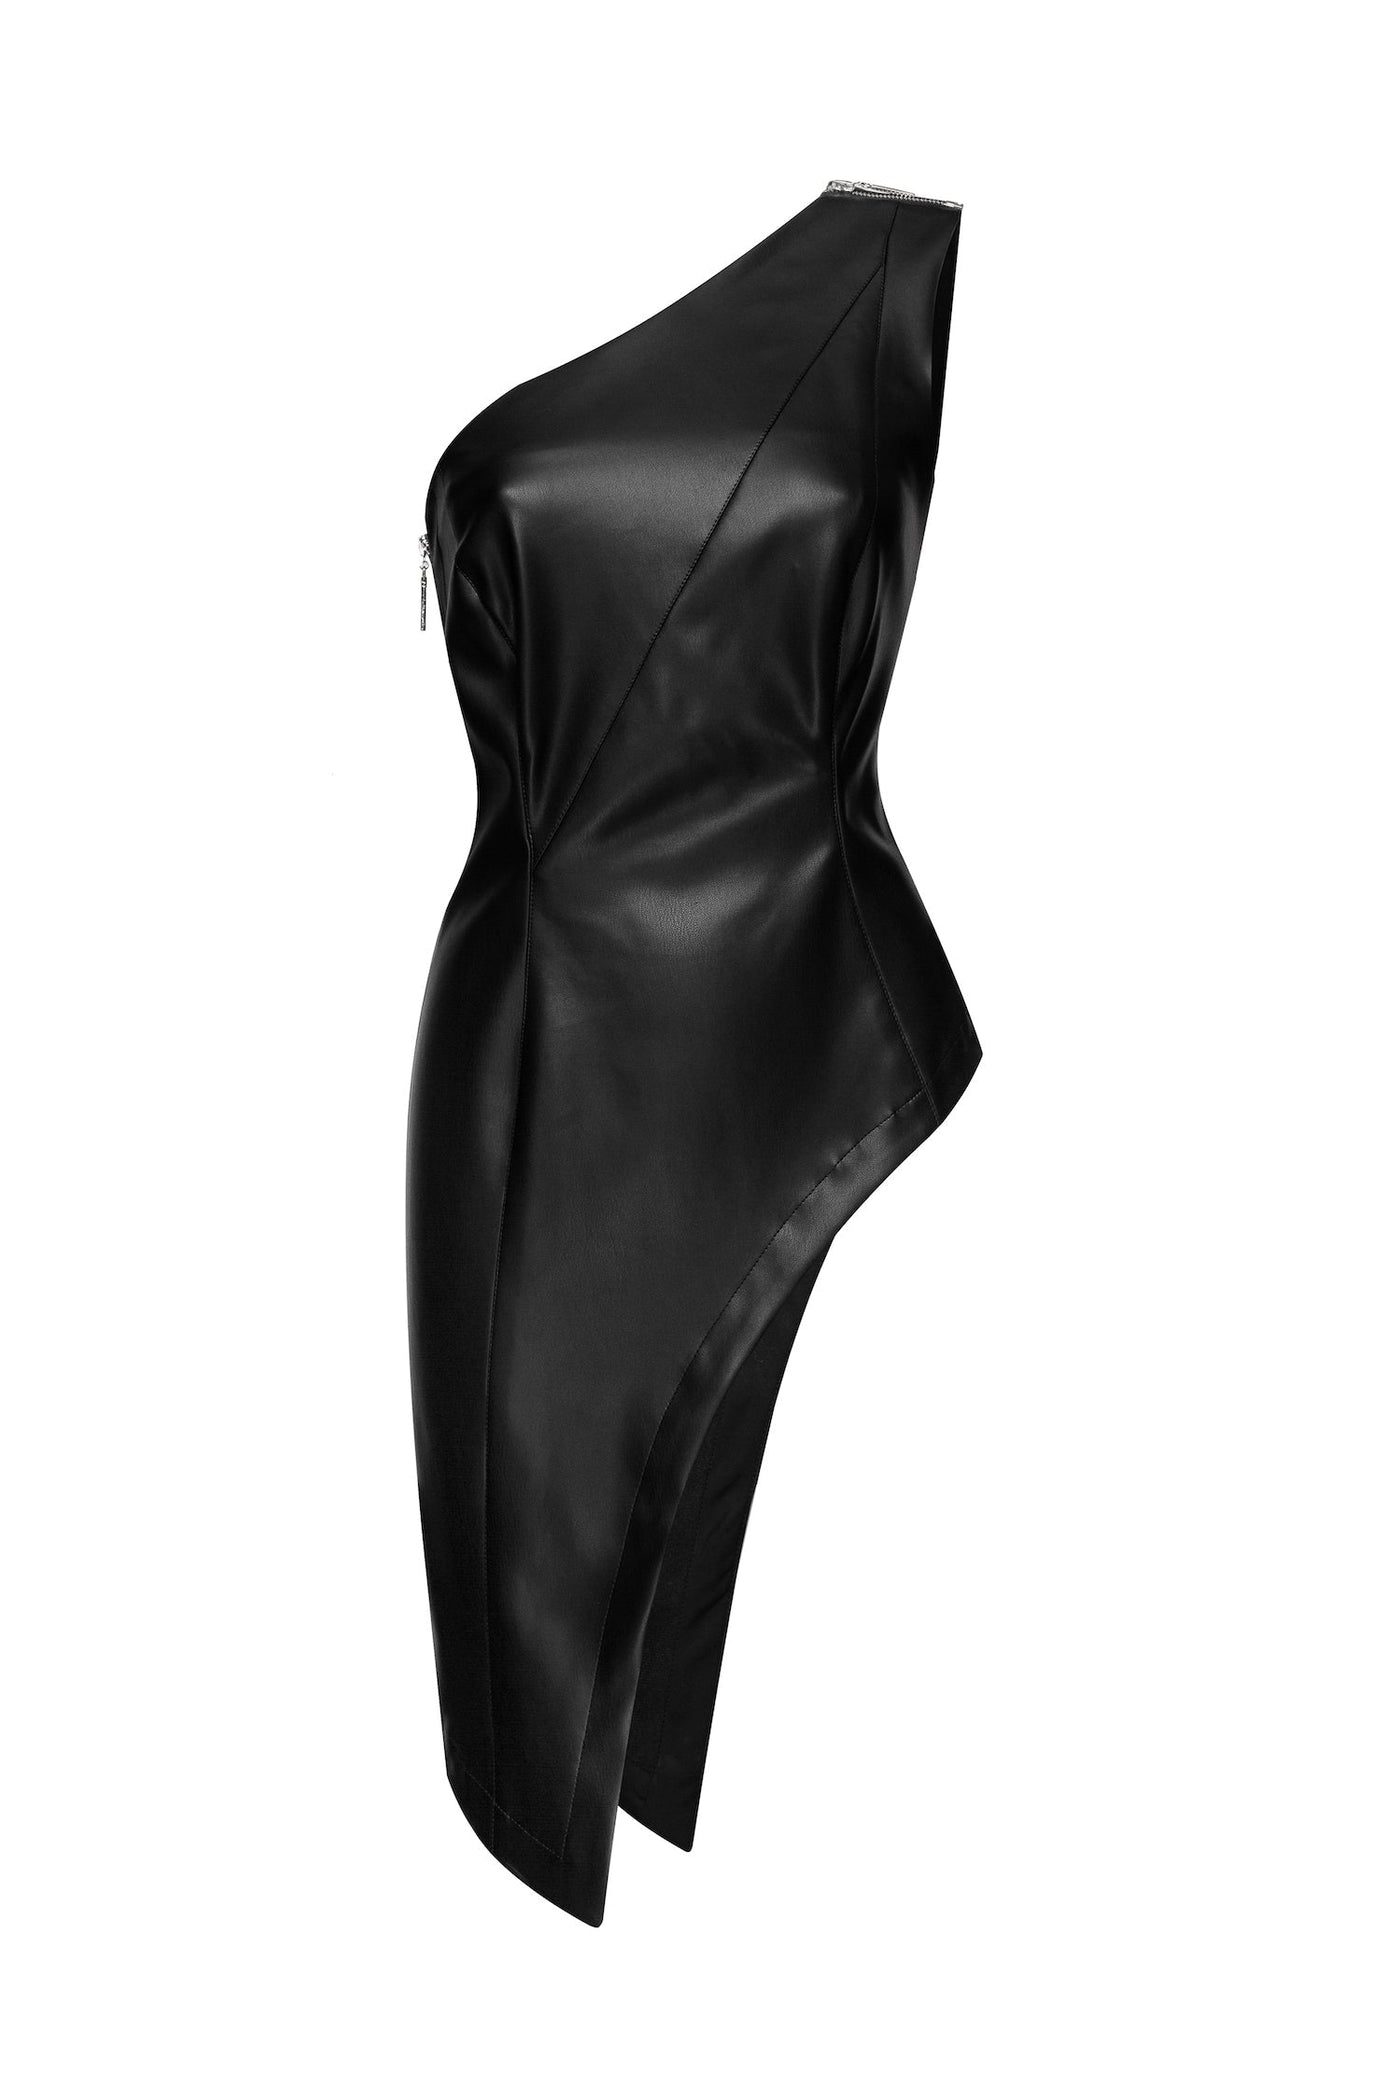 Flussig corset top – MDNT45 | mdnt45.com